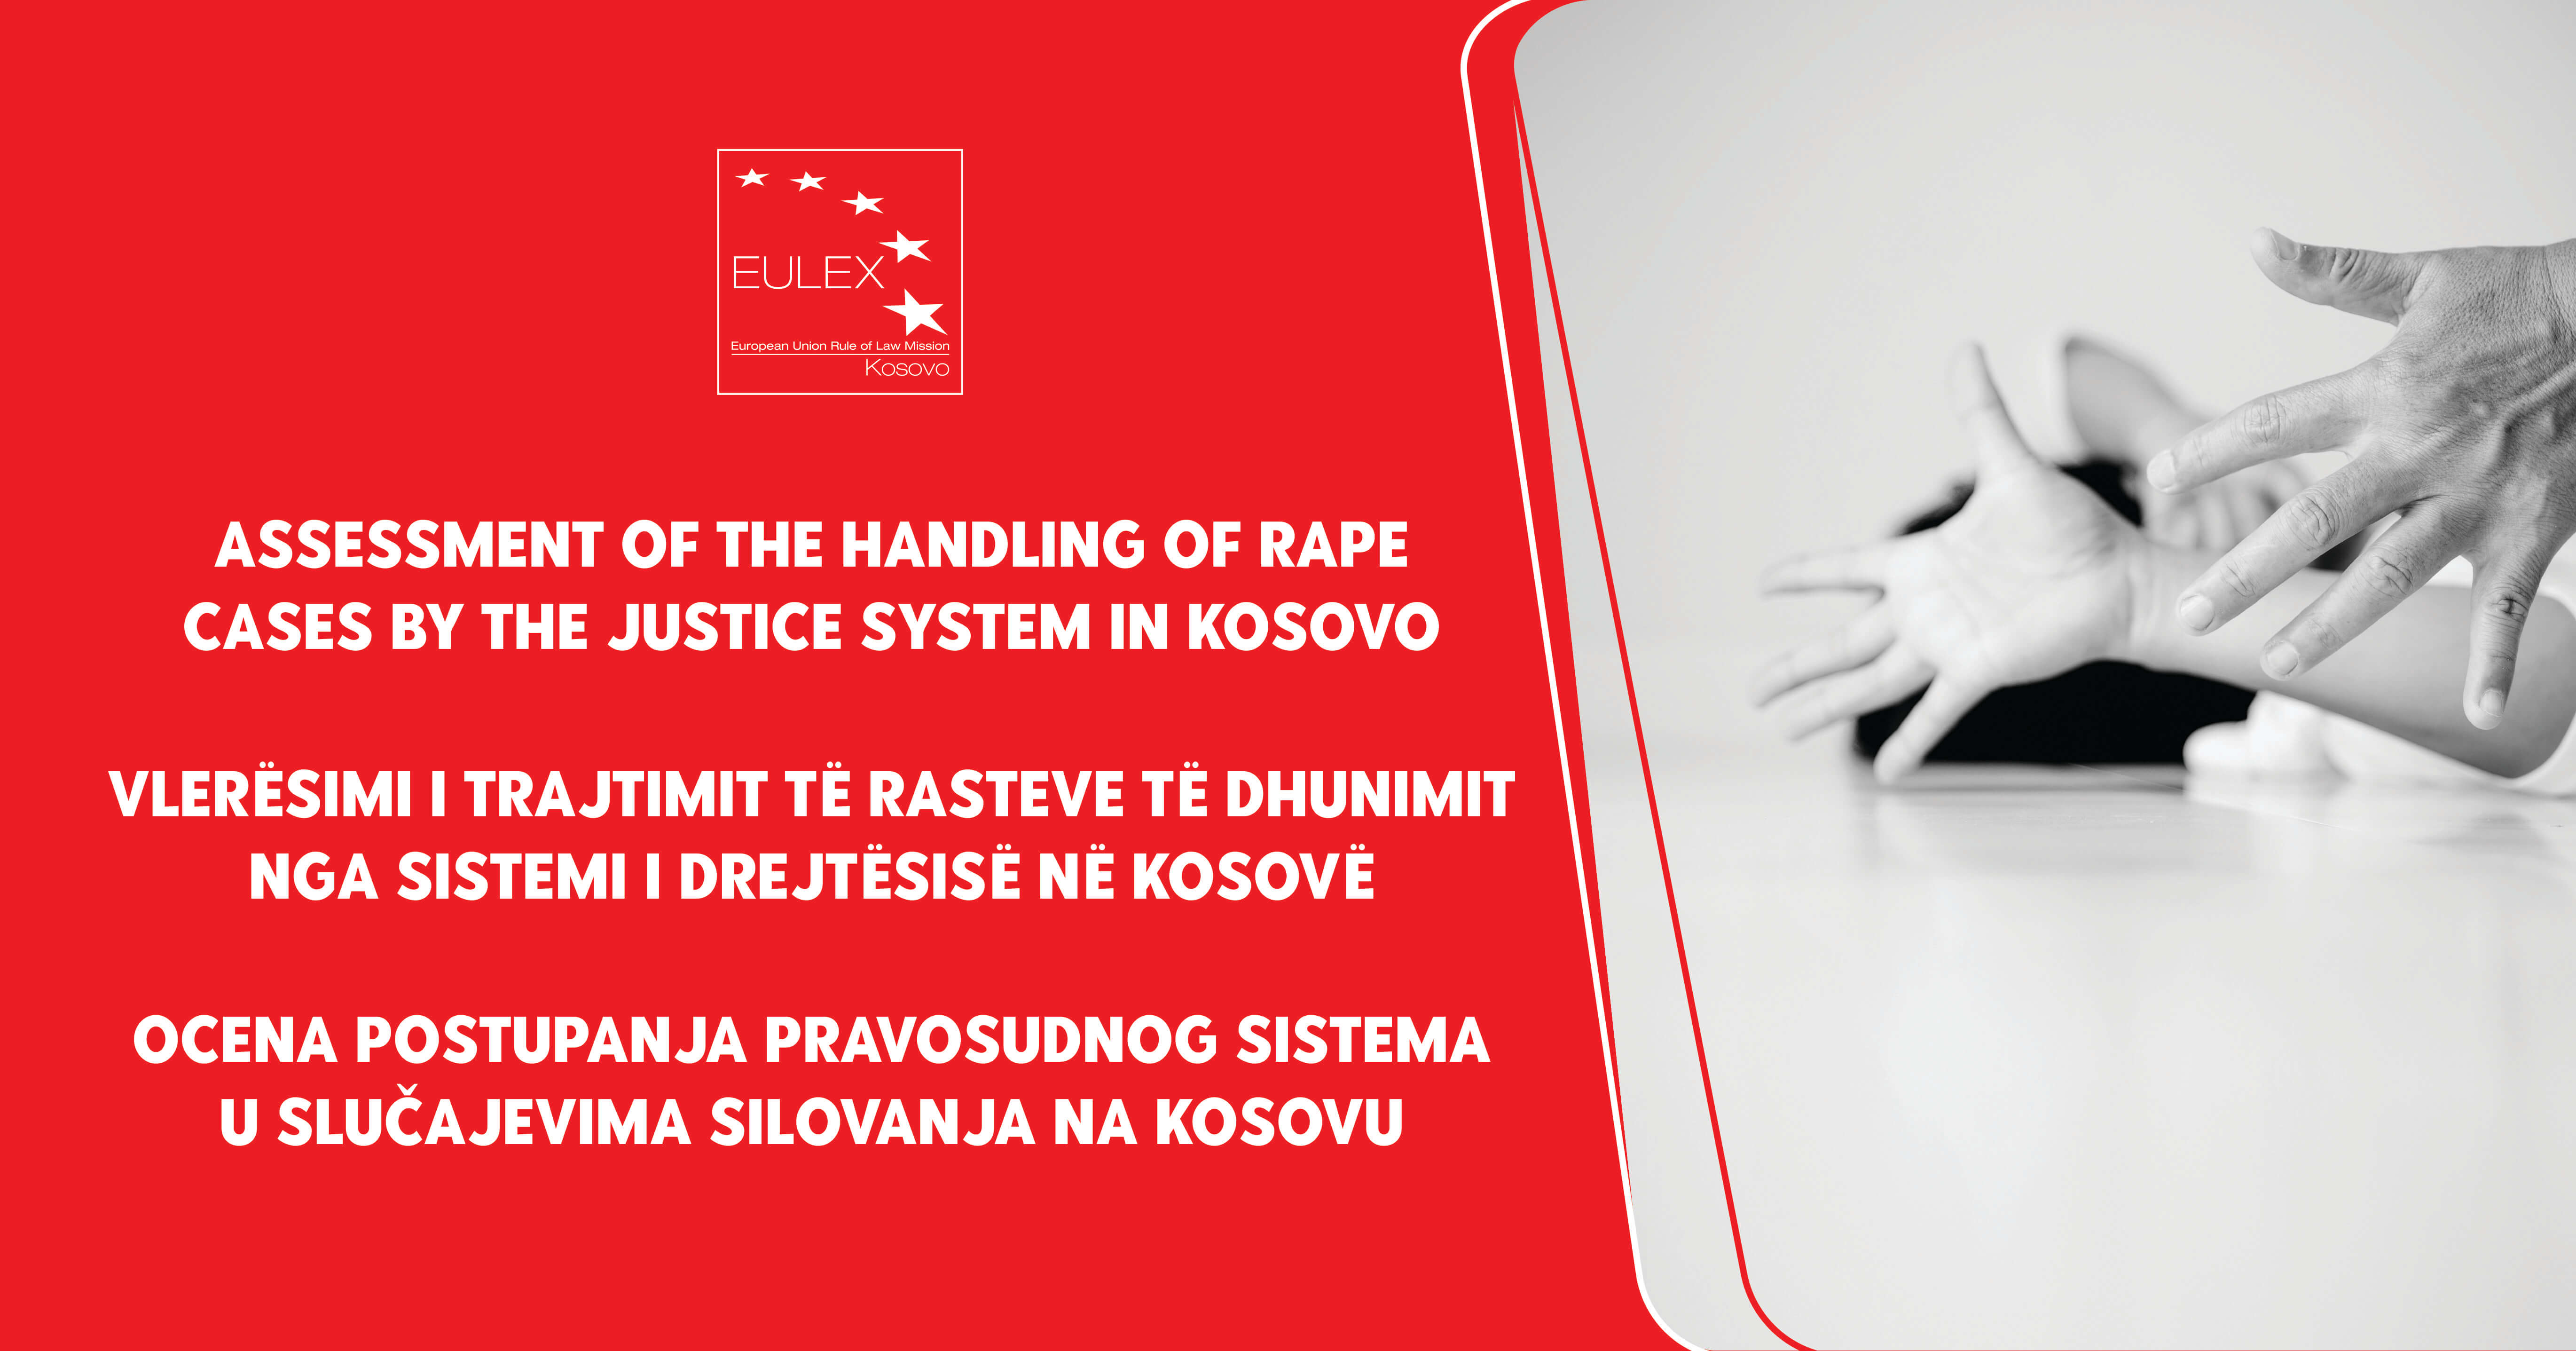 Prezantimi i Raportit Monitorues të EULEX-it: “Vlerësimi i trajtimit të rasteve të dhunimit nga sistemi i drejtësisë në Kosovë”